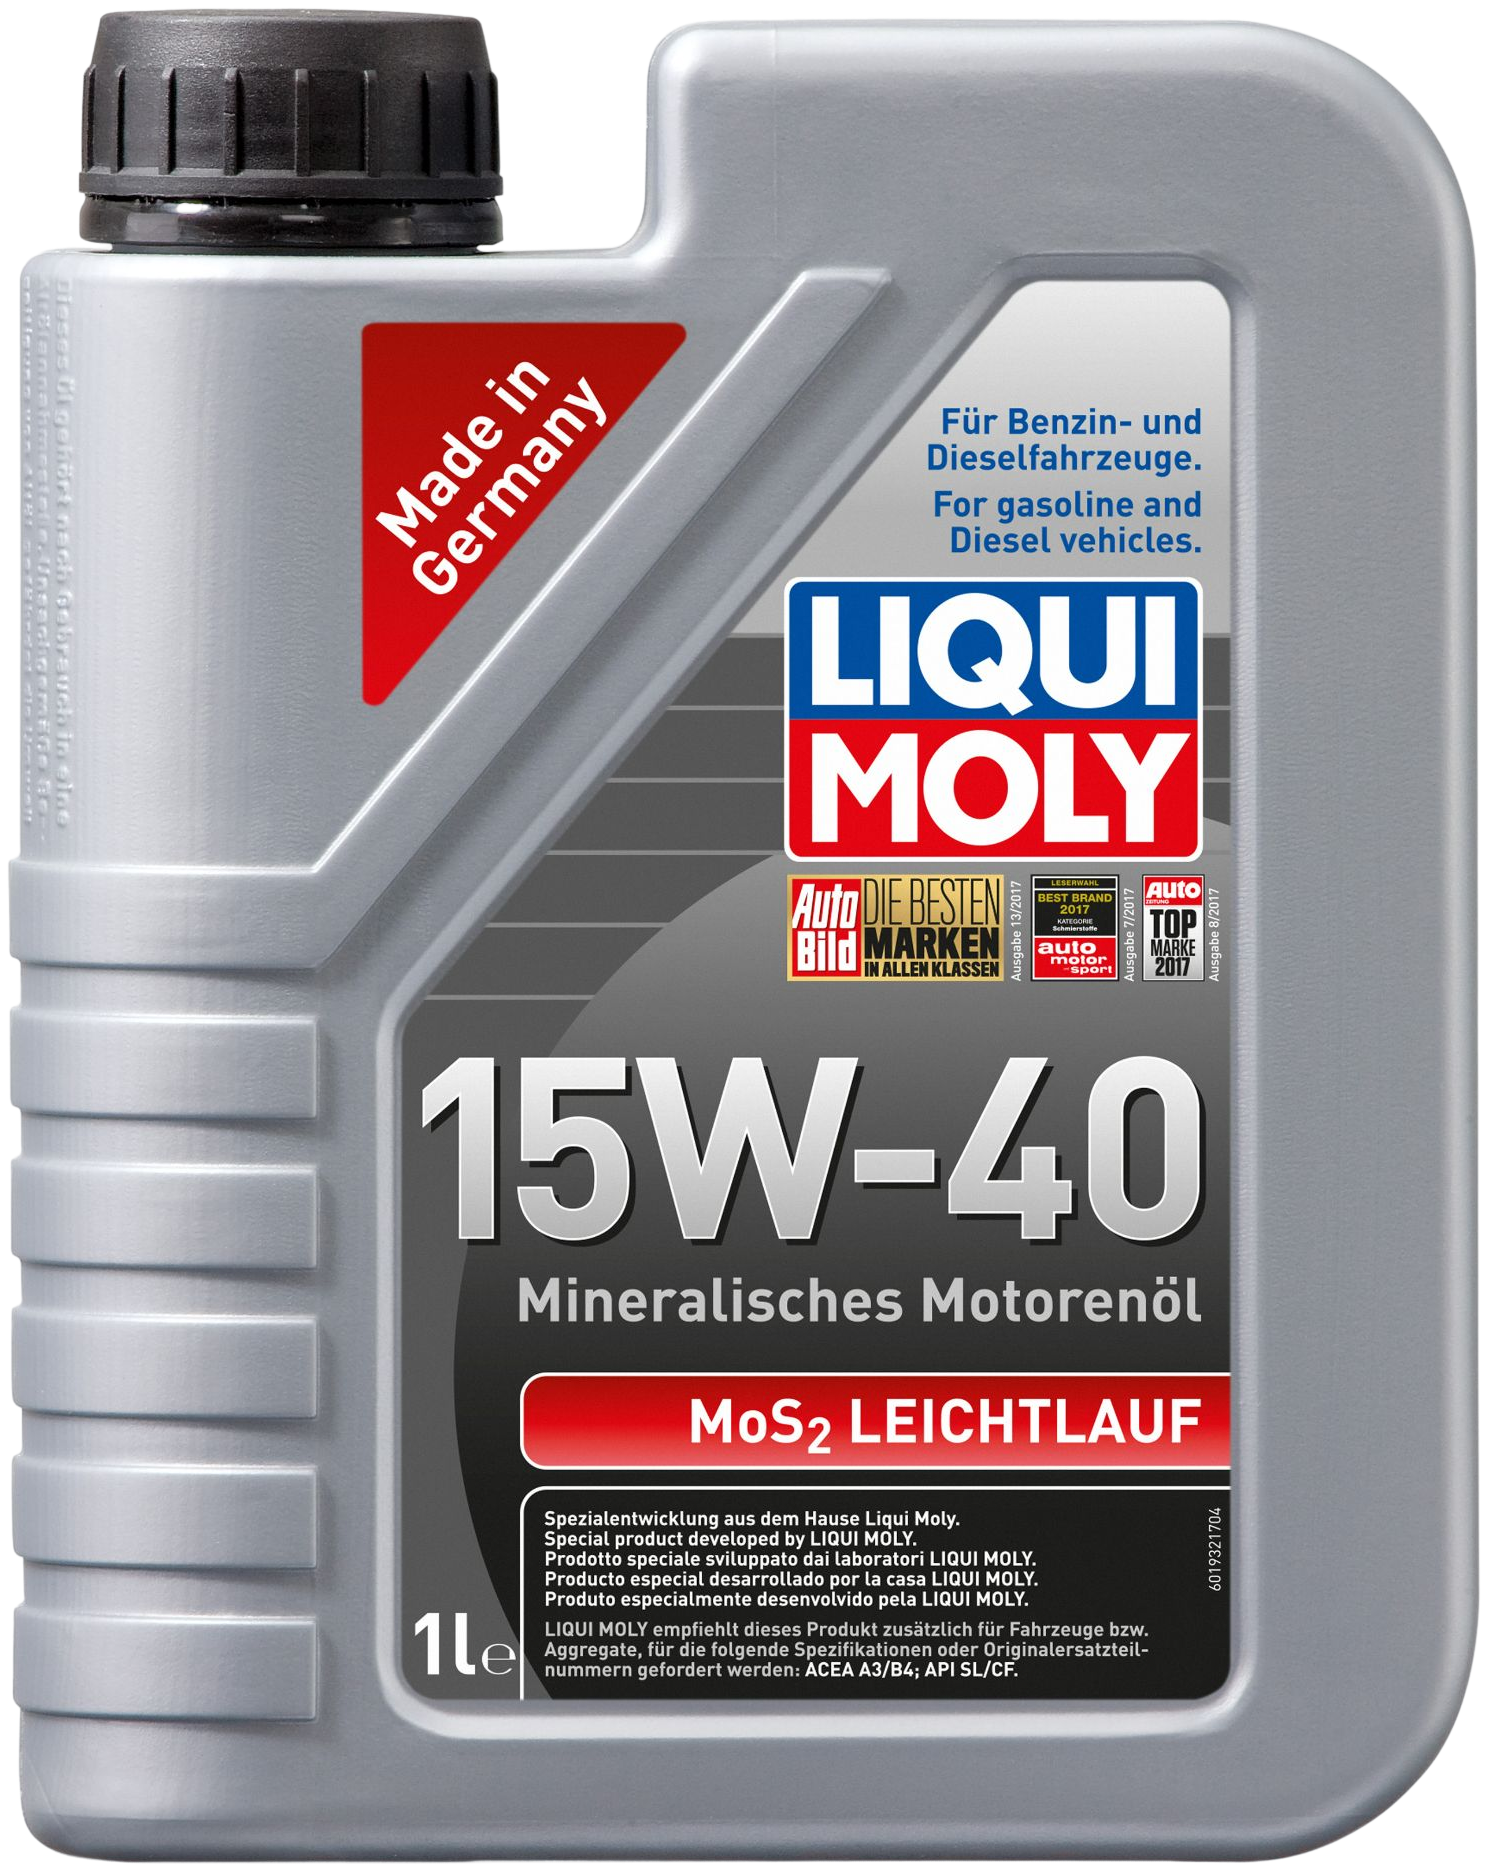 Liqui Moly MoS2 Leichtlauf 15W-40, 1 lt